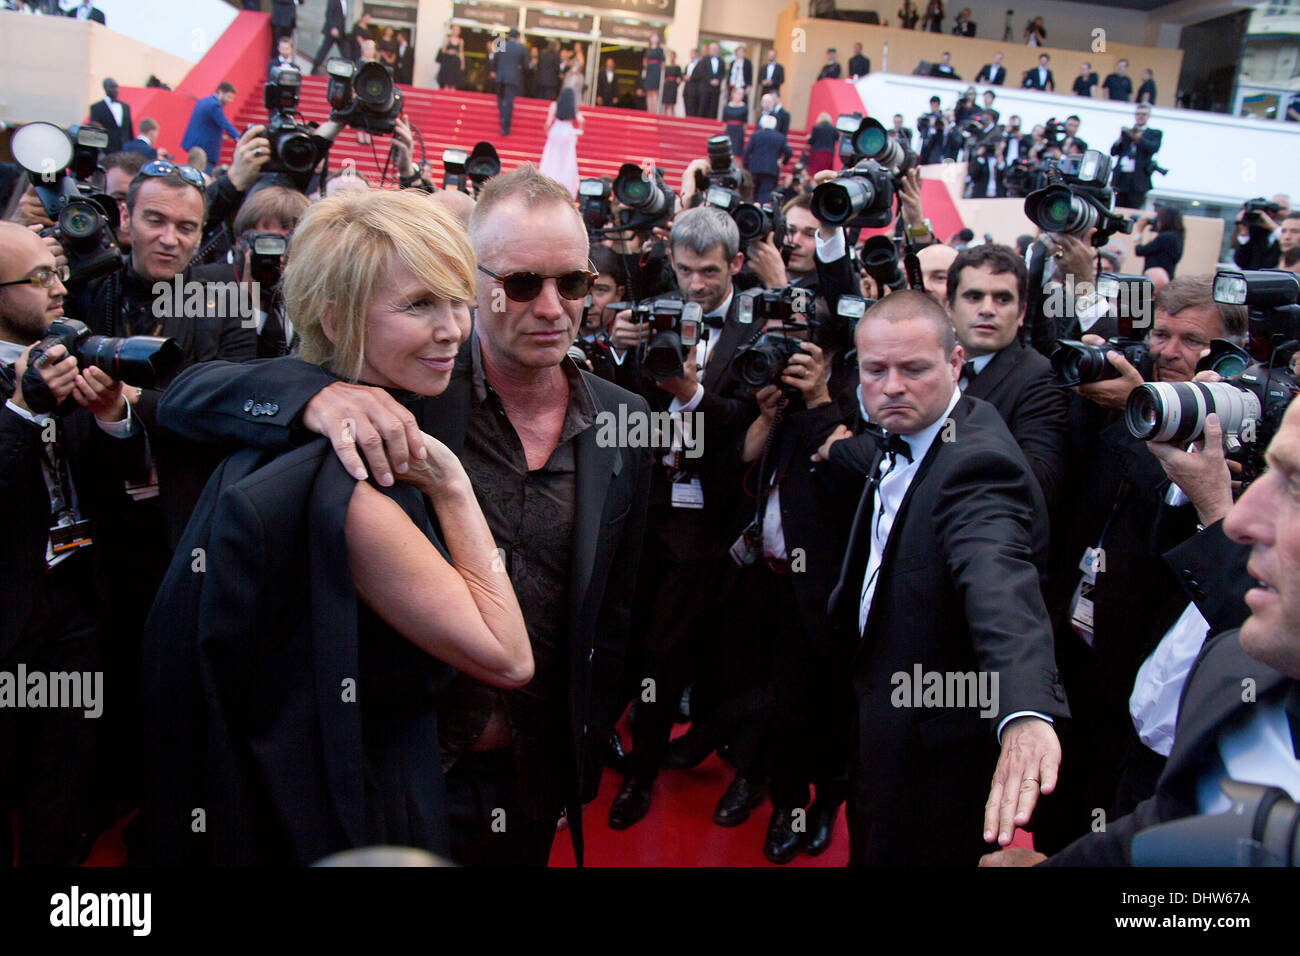 Sting y su esposa Trudie Styler, 'Mud' estreno durante el 65º Festival Anual de Cine de Cannes. Cannes, Francia - 26.05.12 Foto de stock